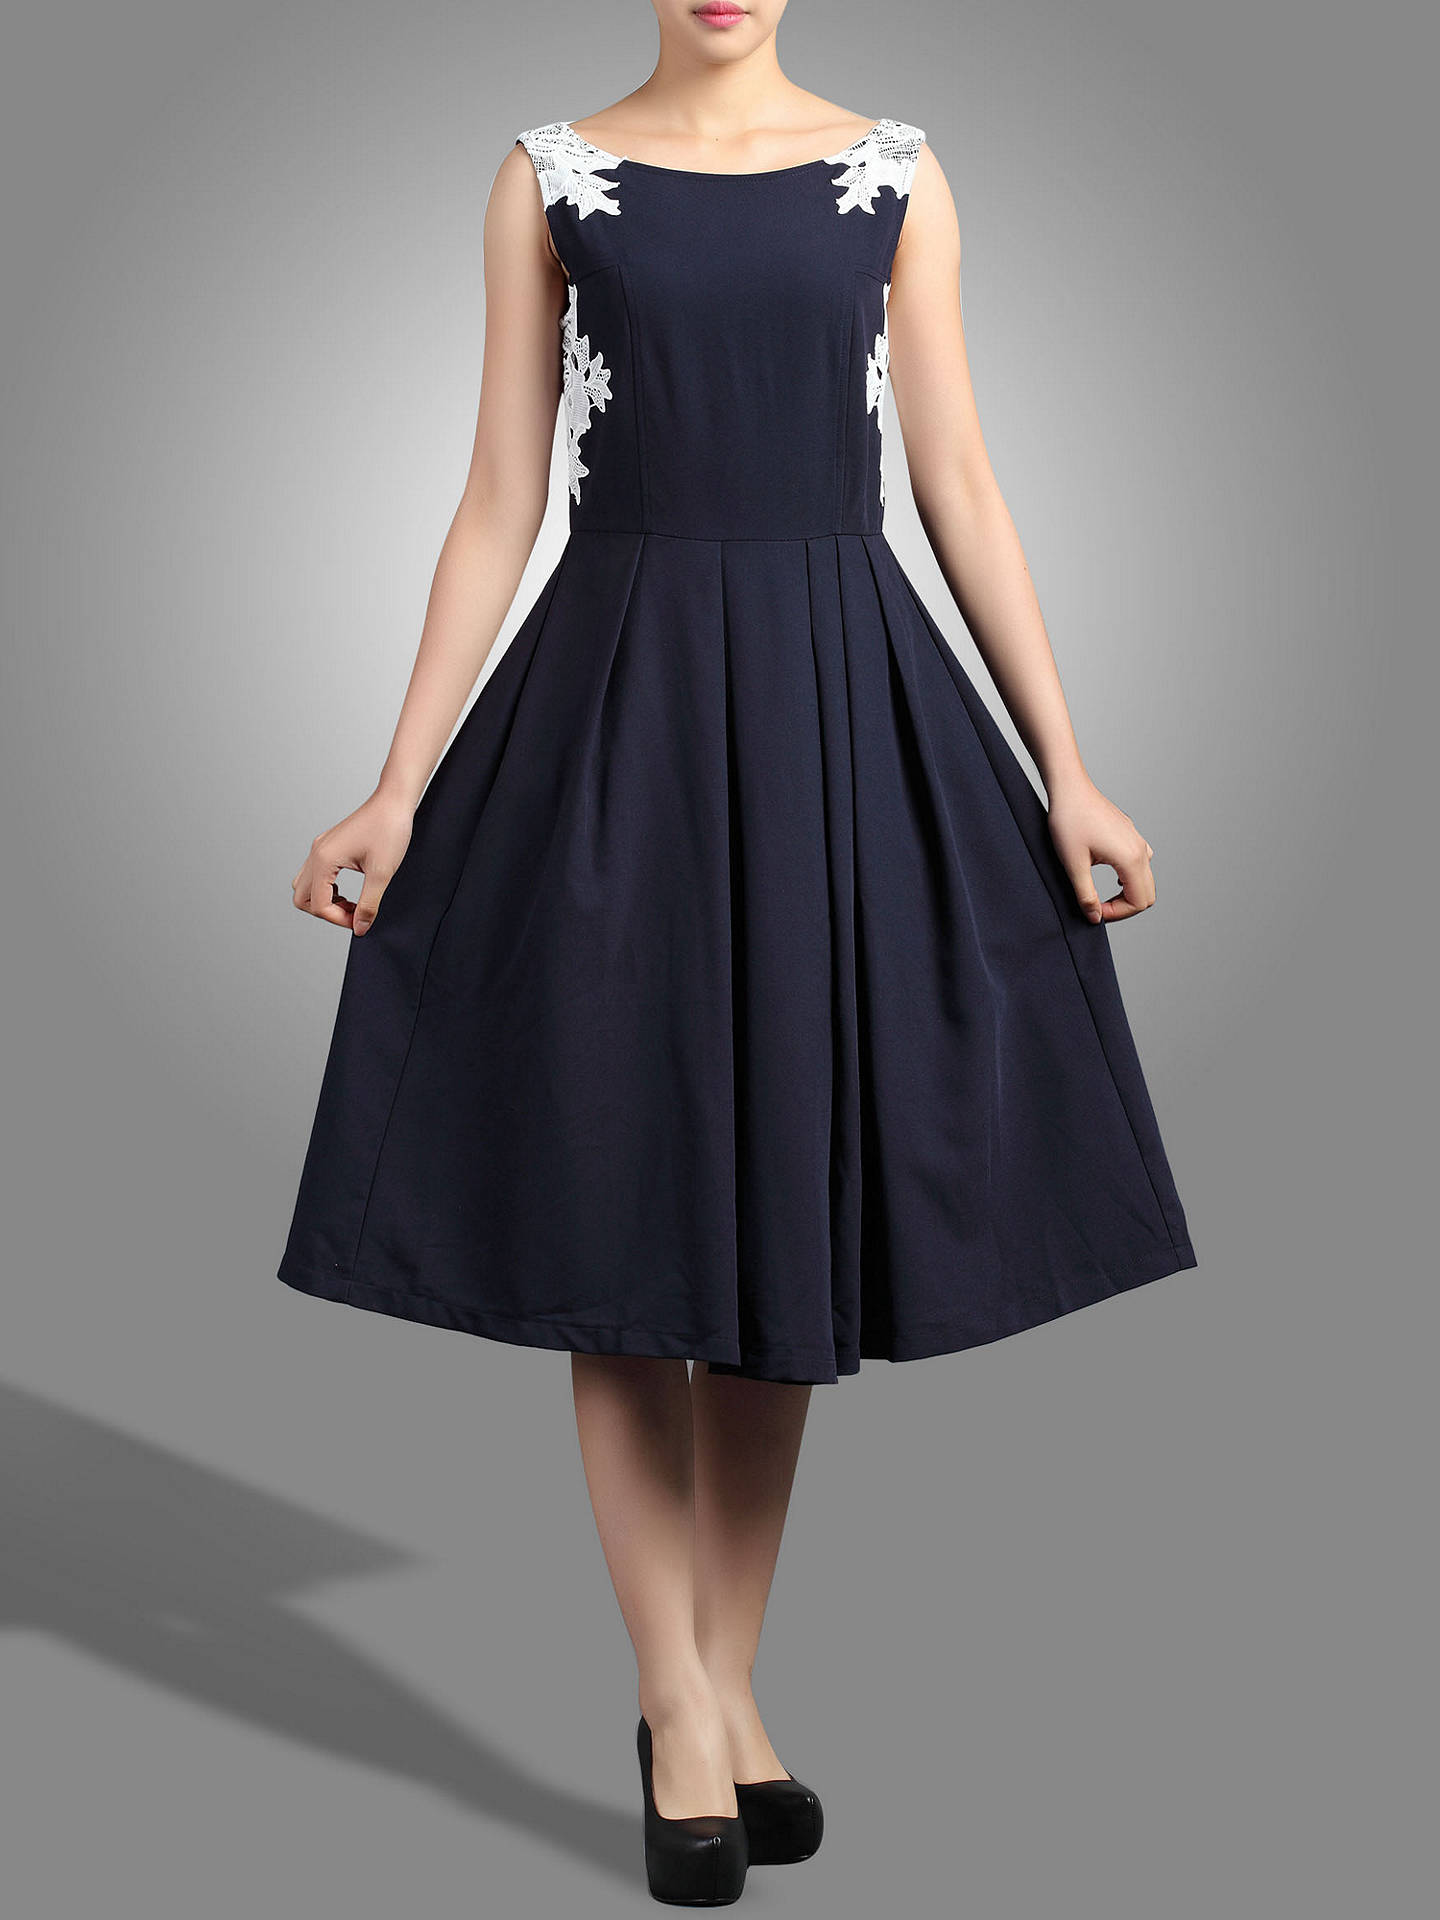 Jolie Moi Lace Applique 50s Dress, Navy at John Lewis & Partners